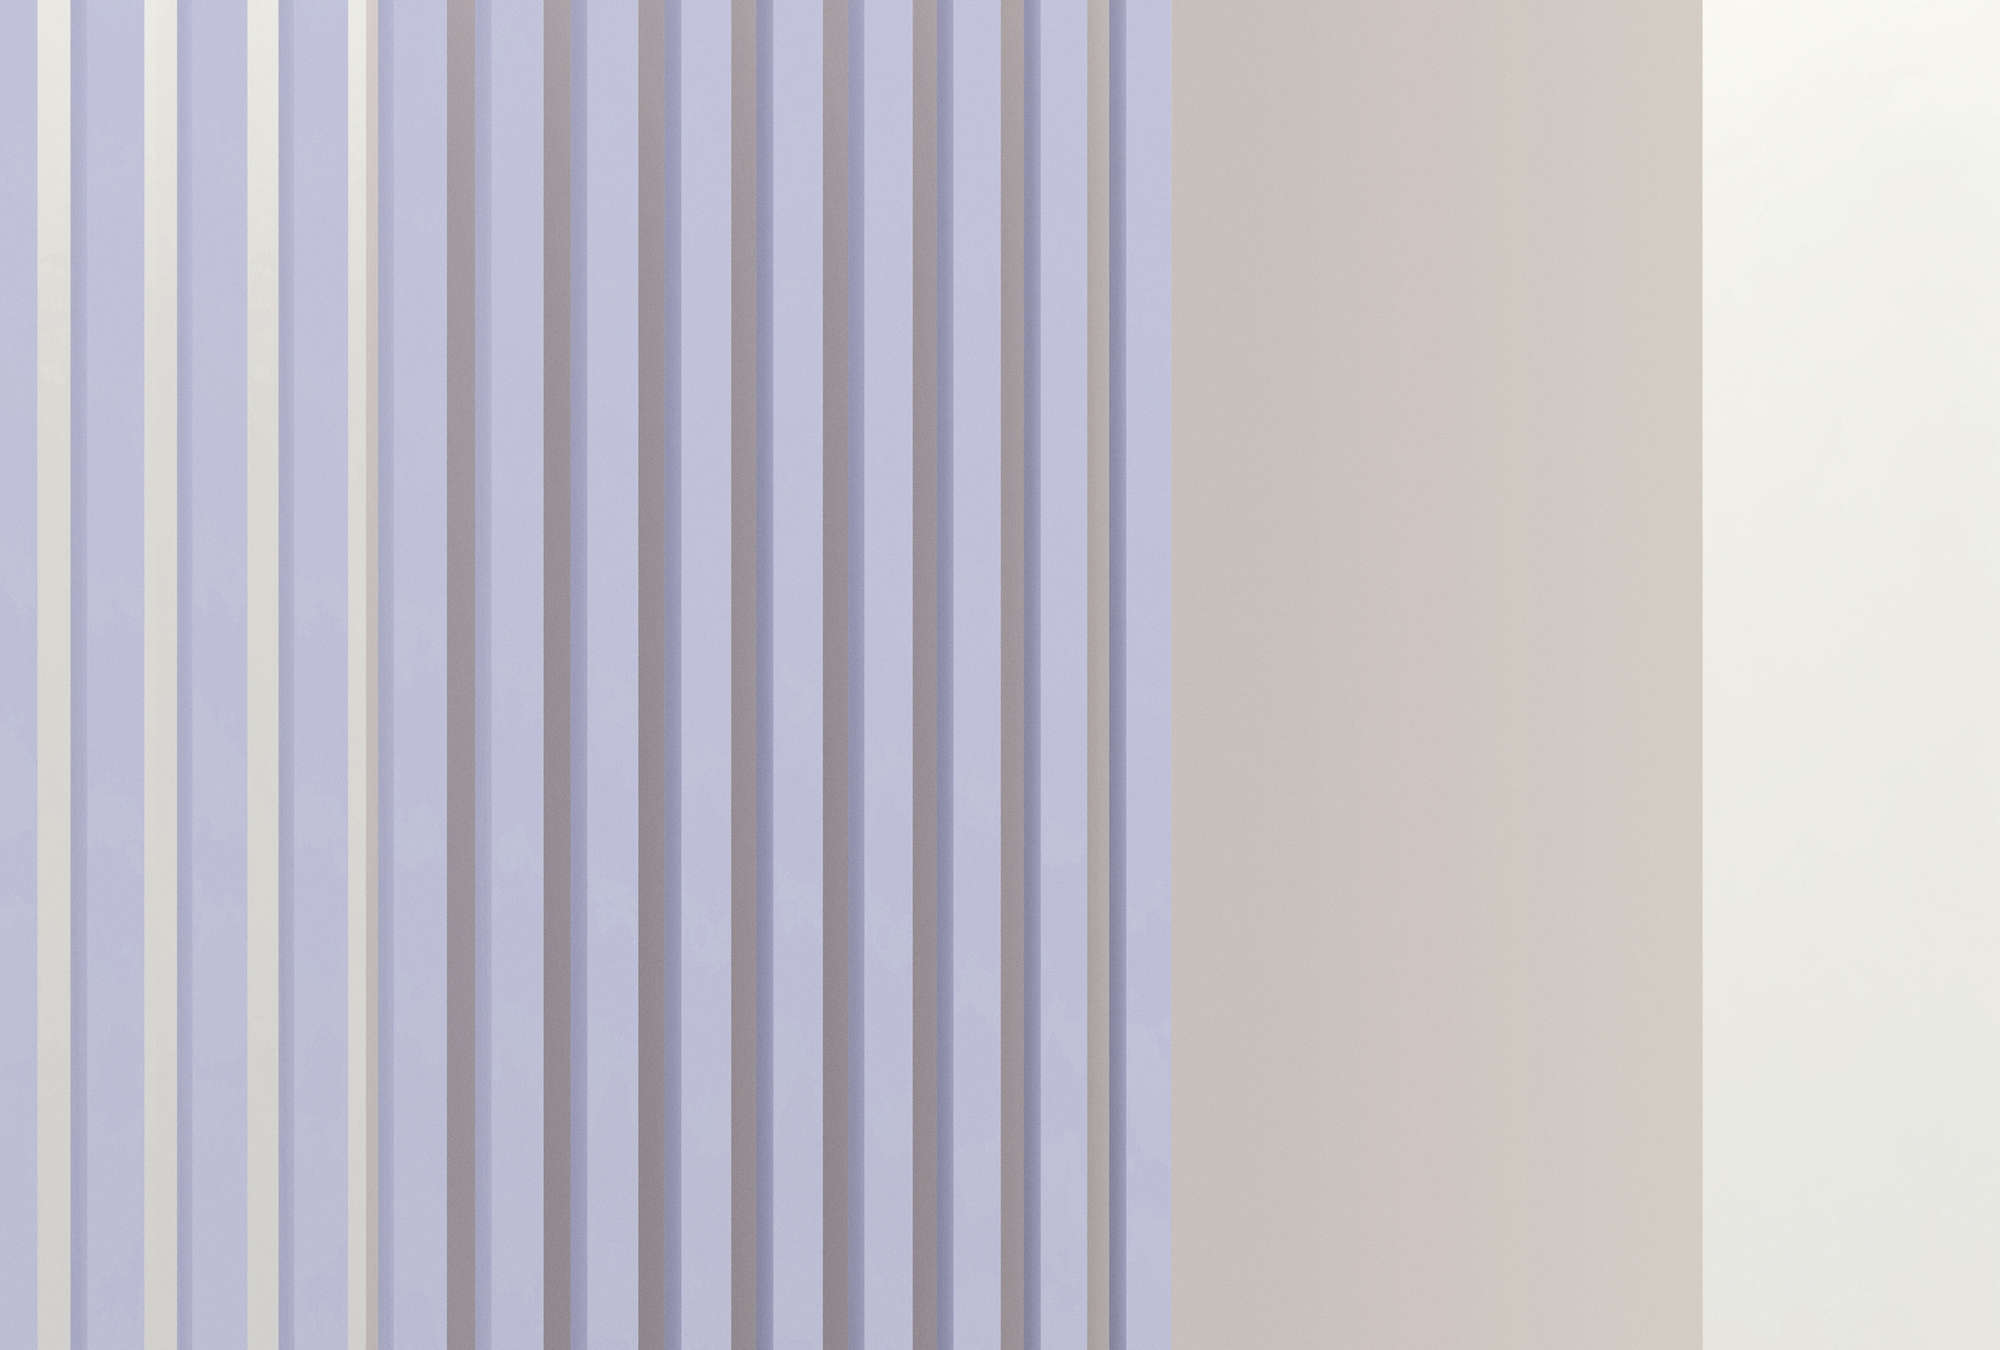             Illusion Room 1 - Mural de pared con diseño de rayas en 3D en color púrpura y gris
        